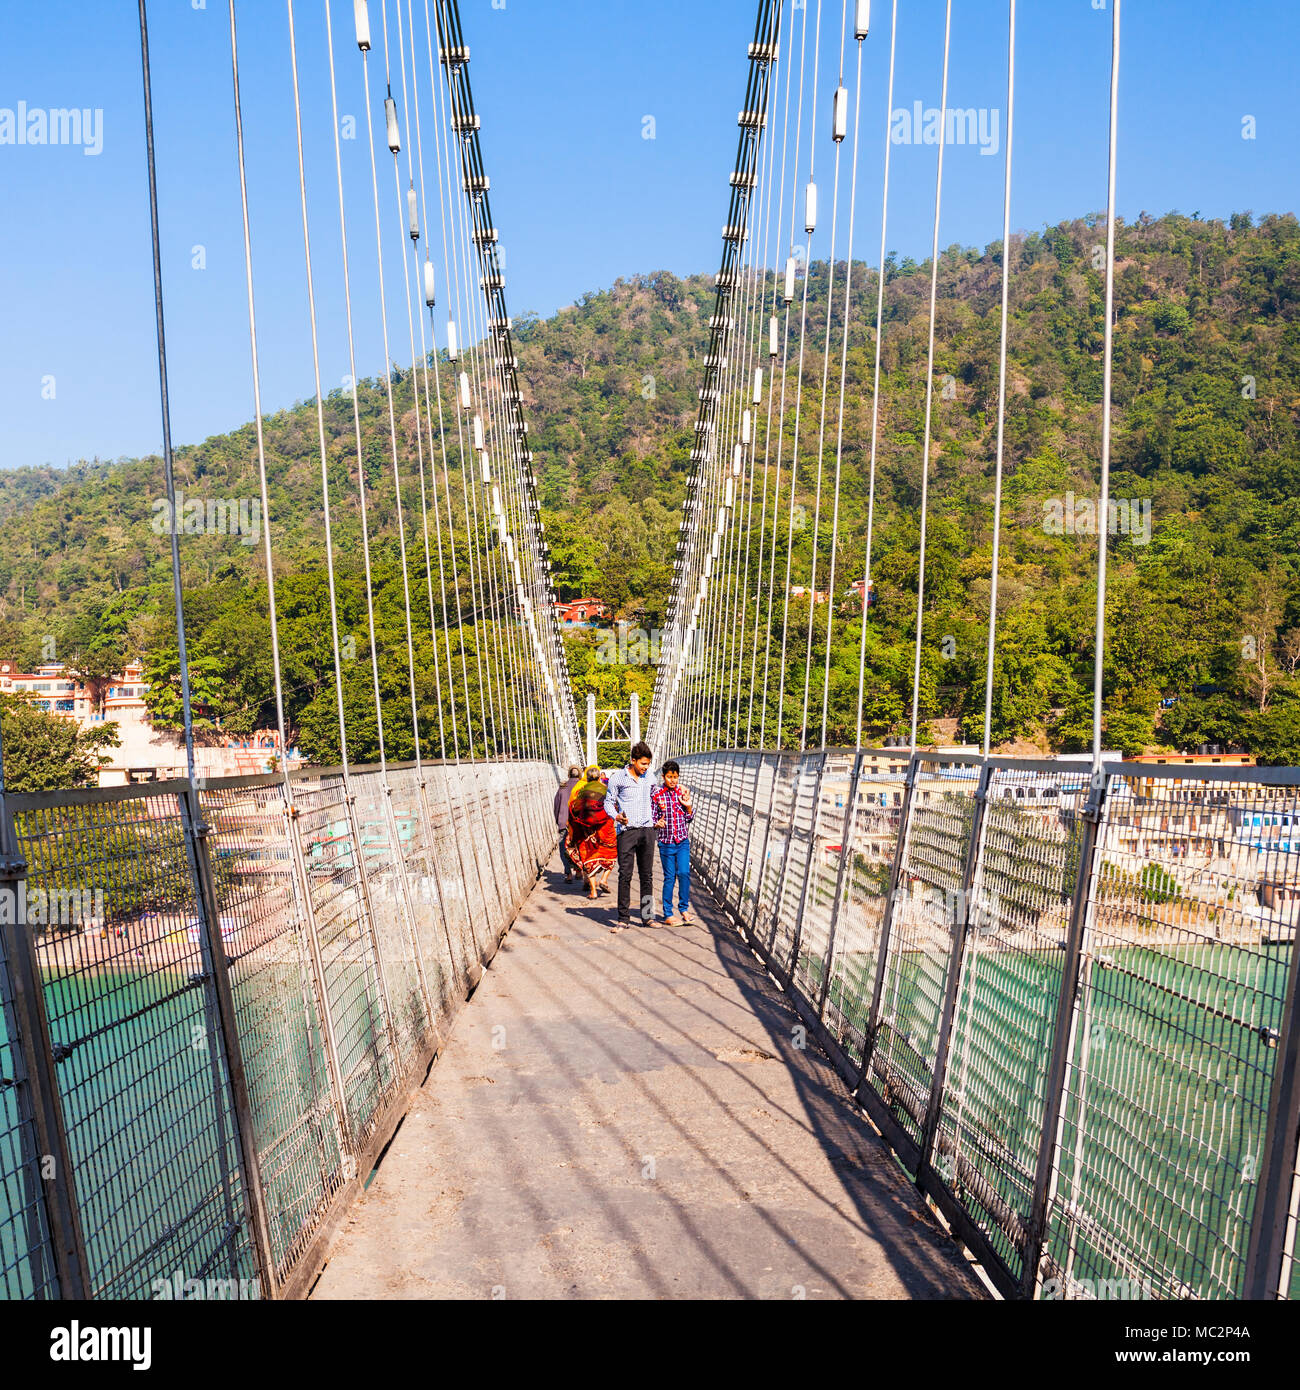 RISHIKESH, INDE - 12 NOVEMBRE 2015 : Lakshman Jhula est un pont suspendu en fer situé à Rishikesh, l'état de Uttarakhand en Inde. Banque D'Images